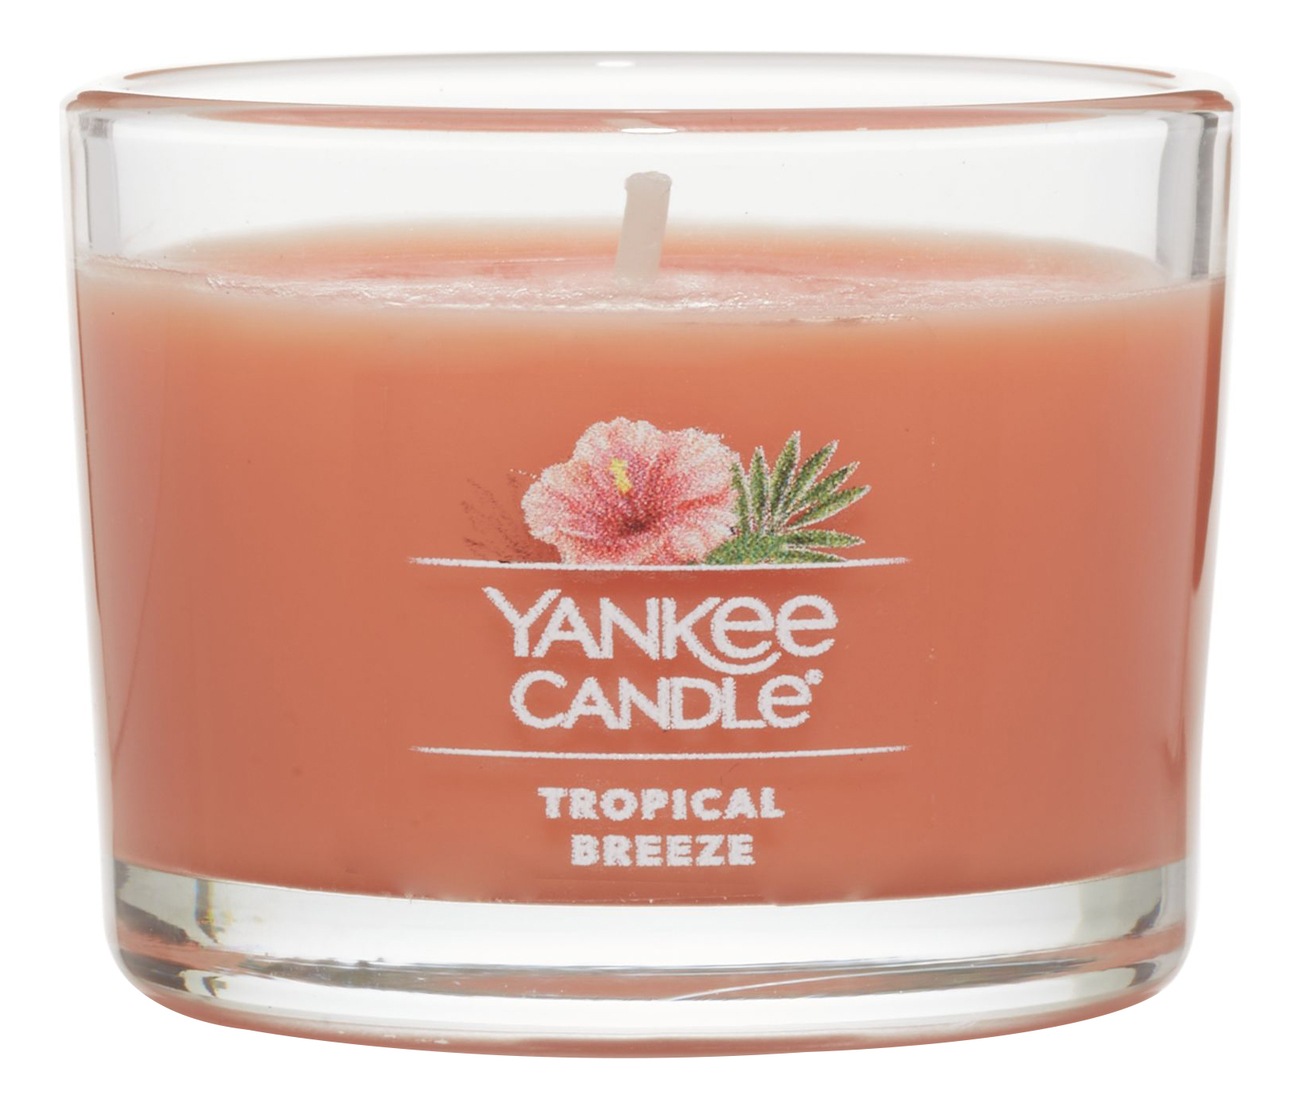 Купить Ароматическая свеча Tropical Breeze: свеча 37г, Yankee Candle